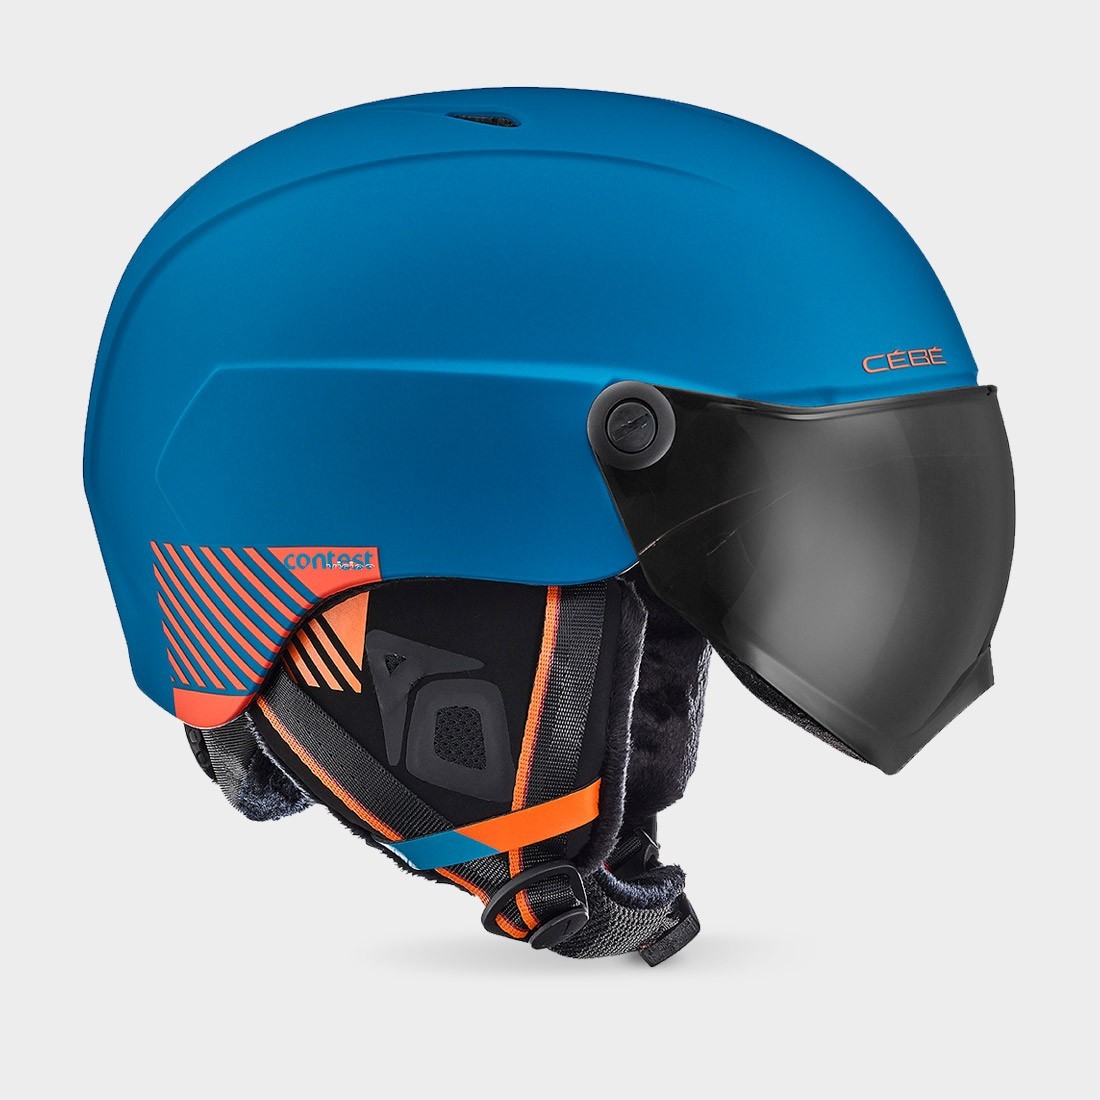 cebe-contest-vision-casque-ski-visiere-blue-orange